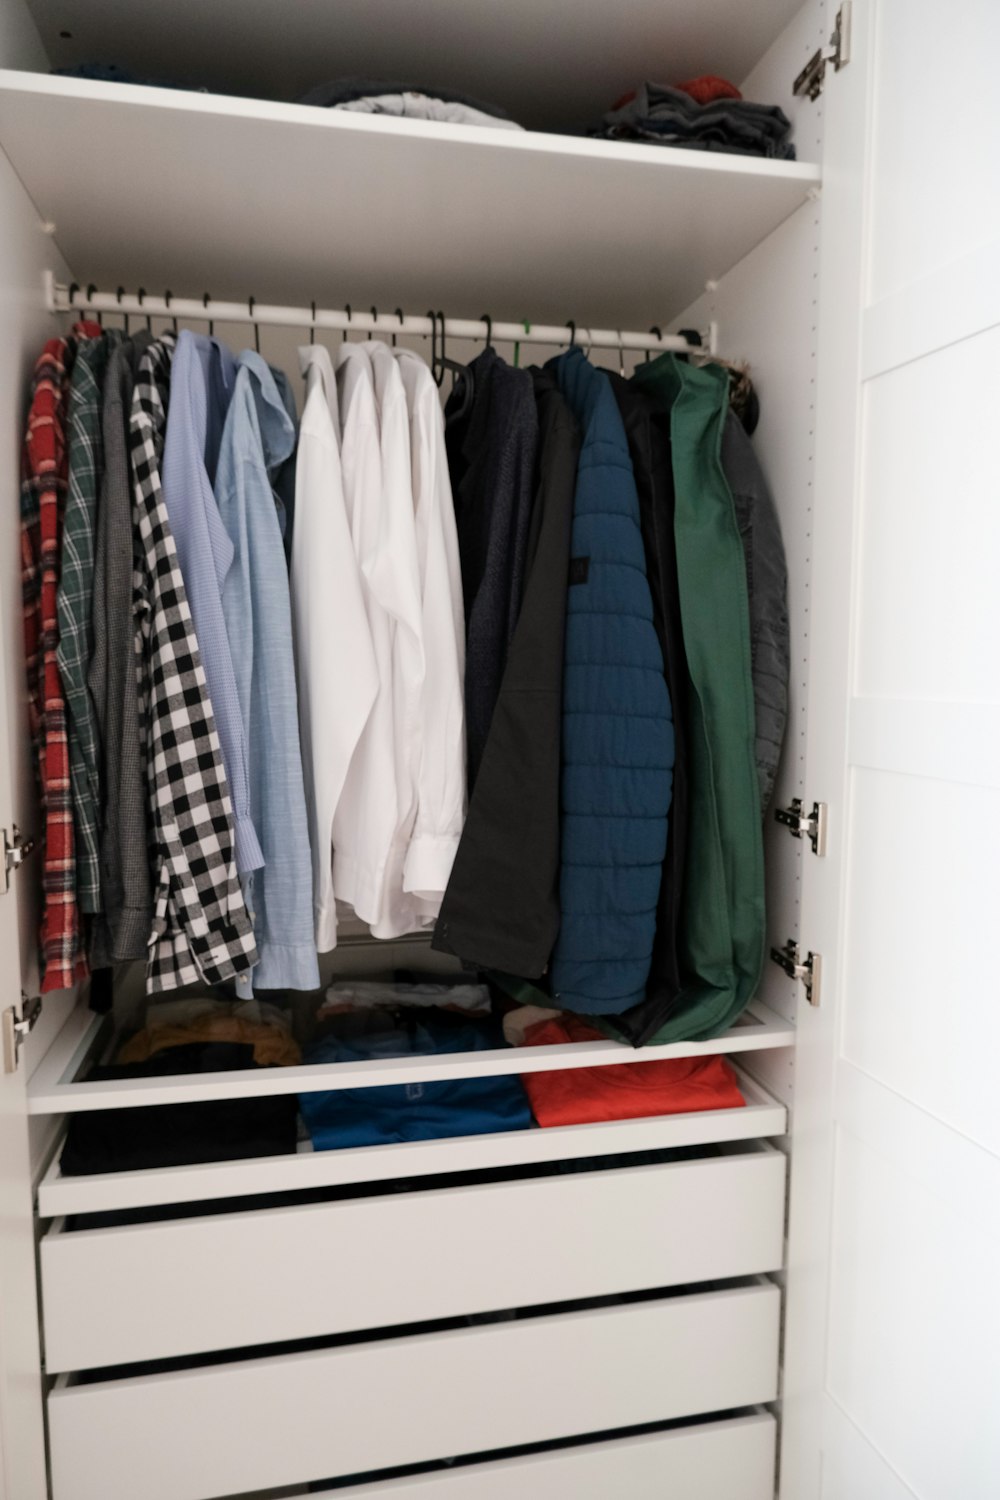 a closet full of clothes